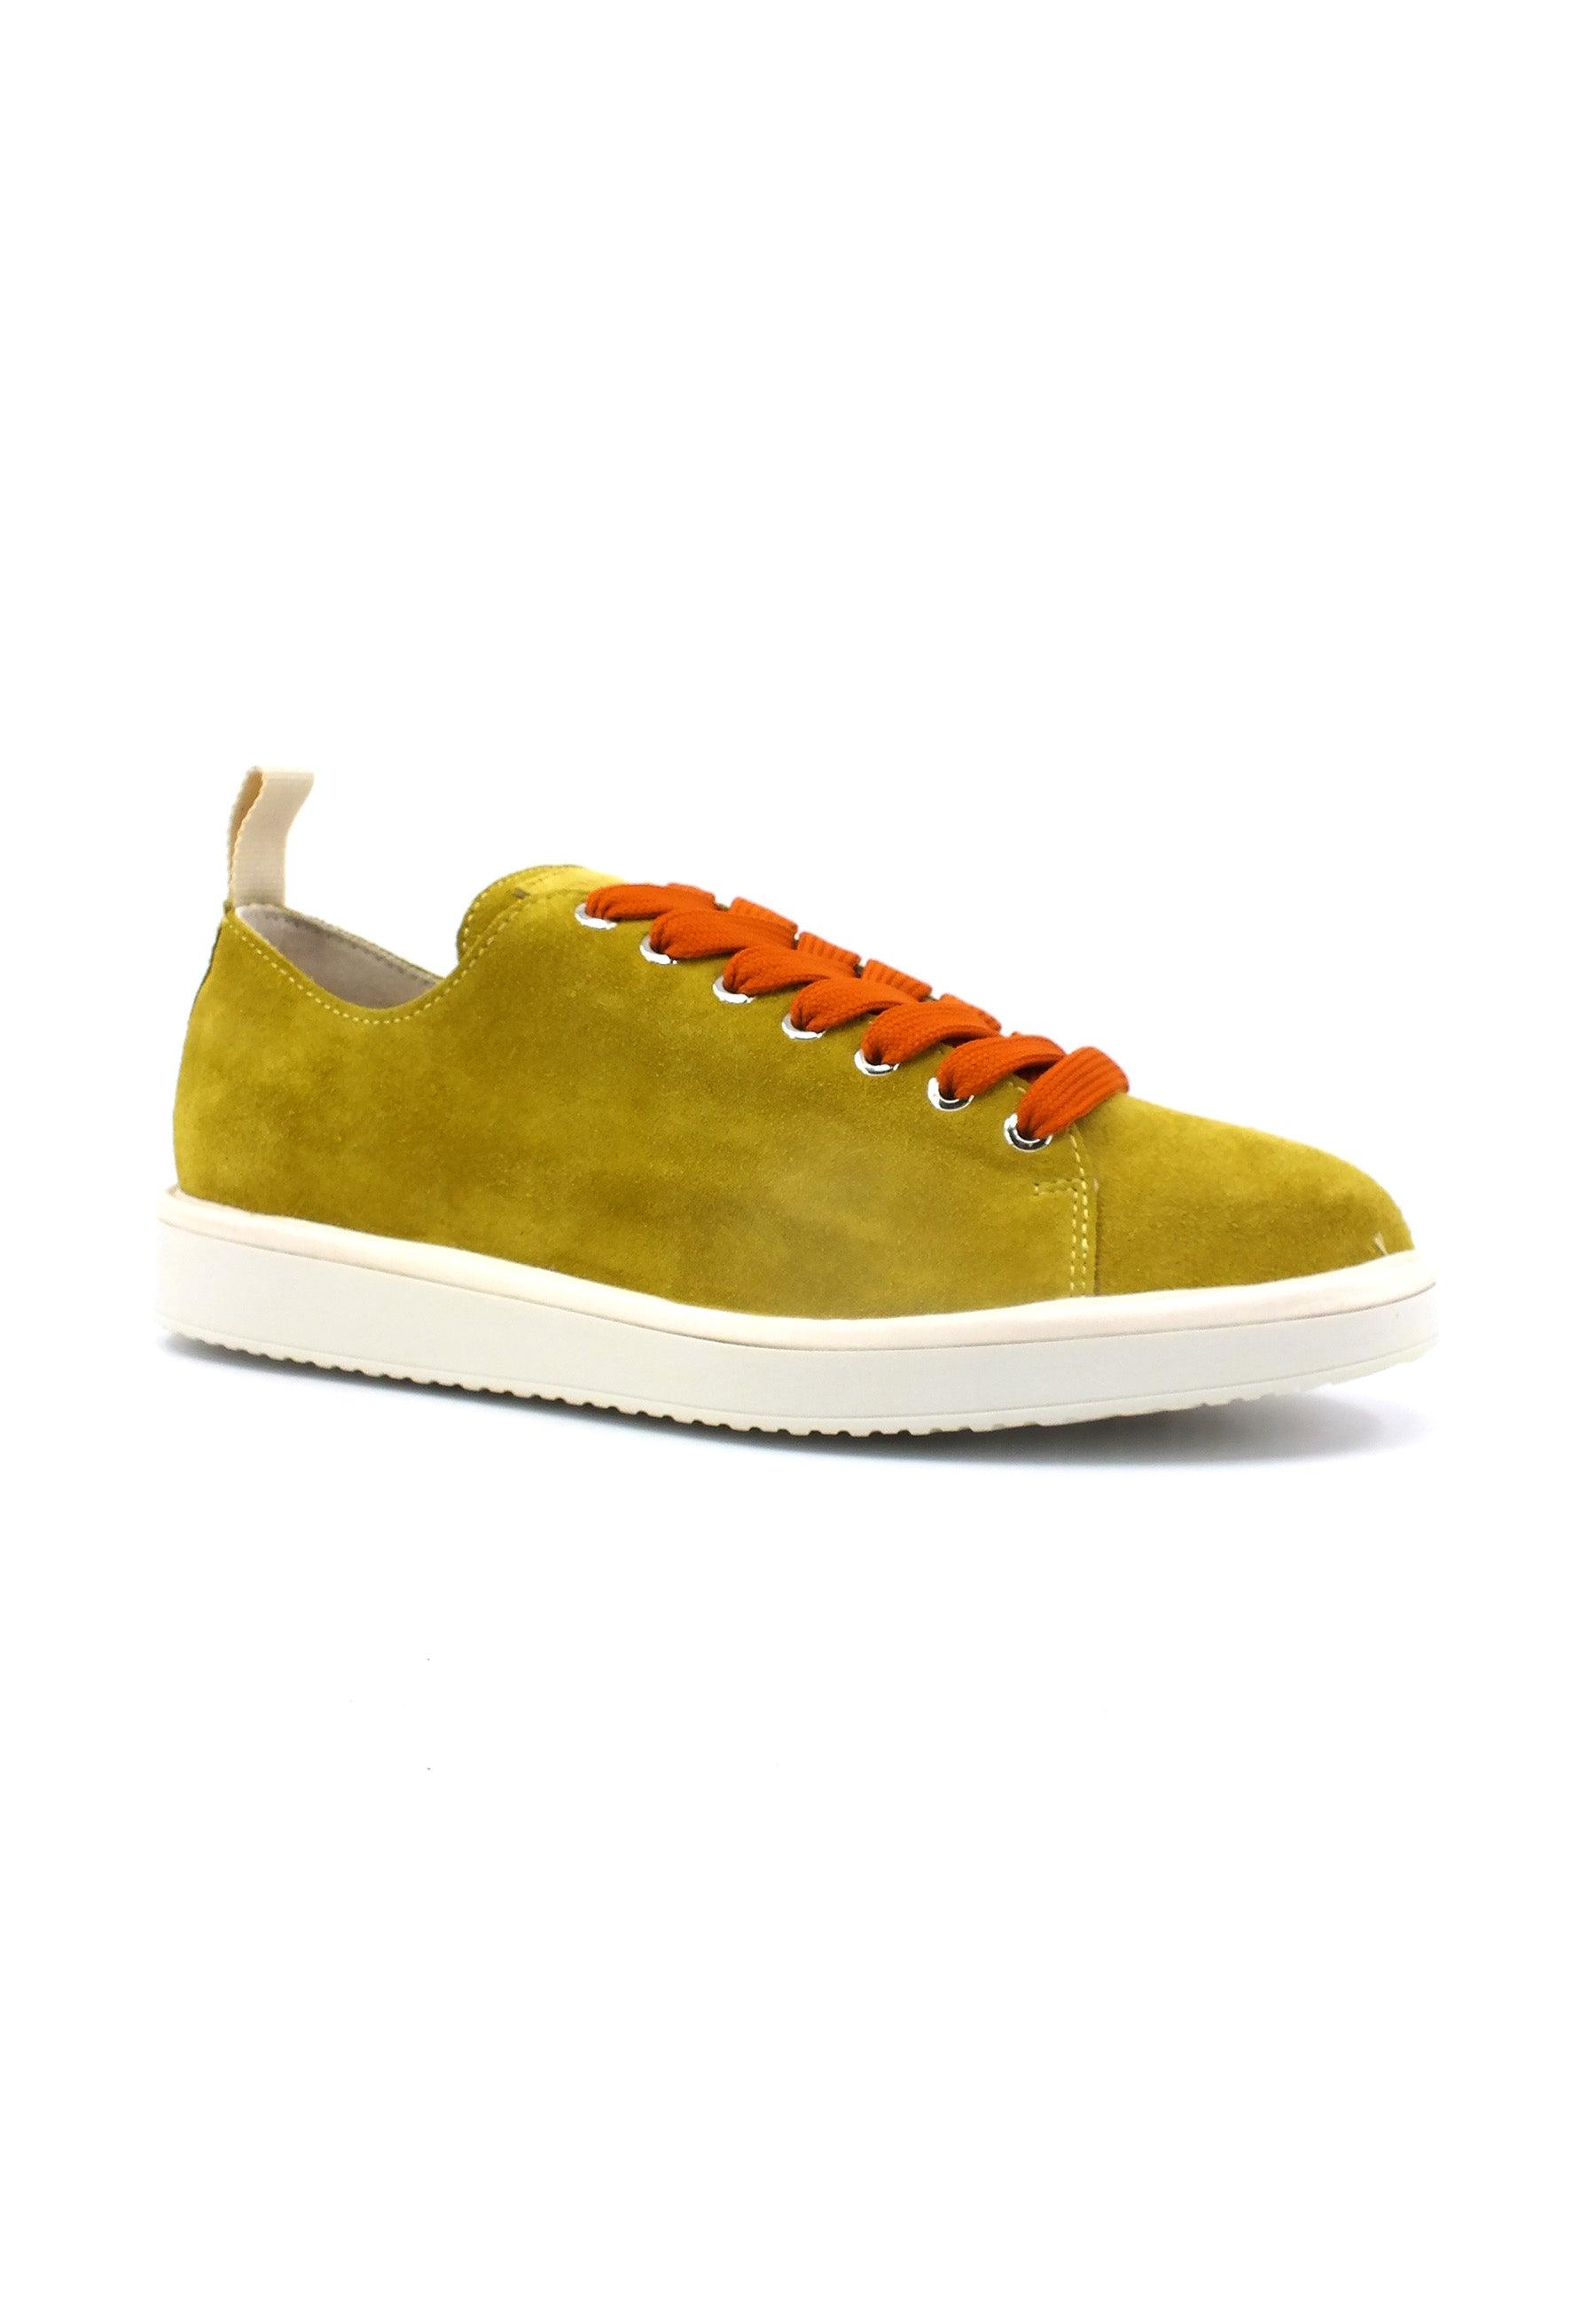 PAN CHIC Sneaker Uomo Citron Burnt Orange P01M00100222004 - Sandrini Calzature e Abbigliamento